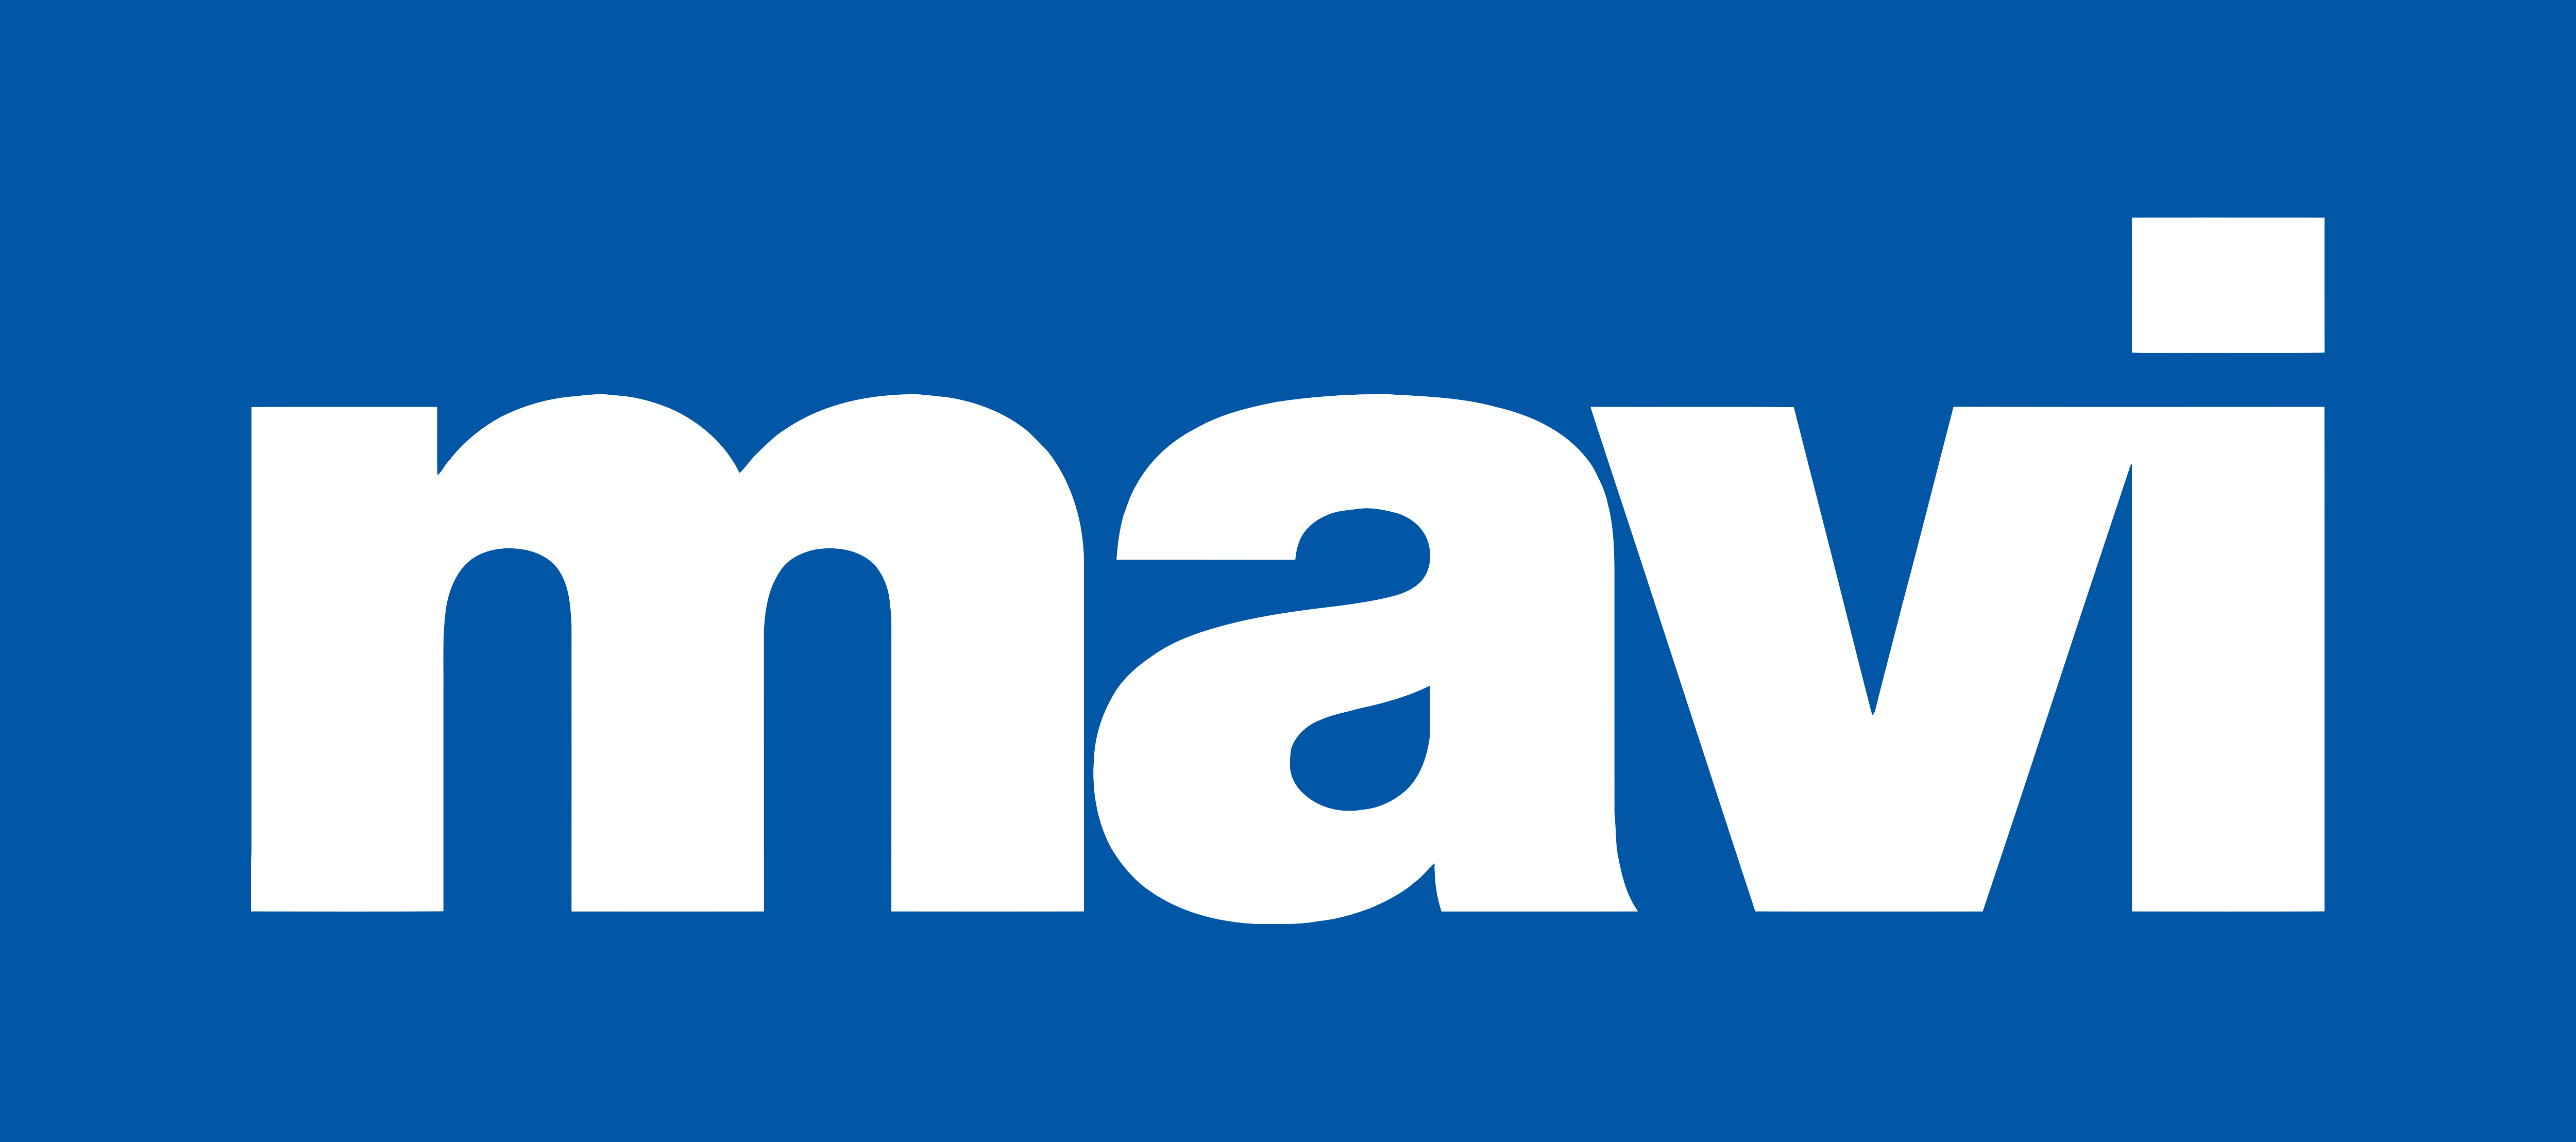 Mavi Logo